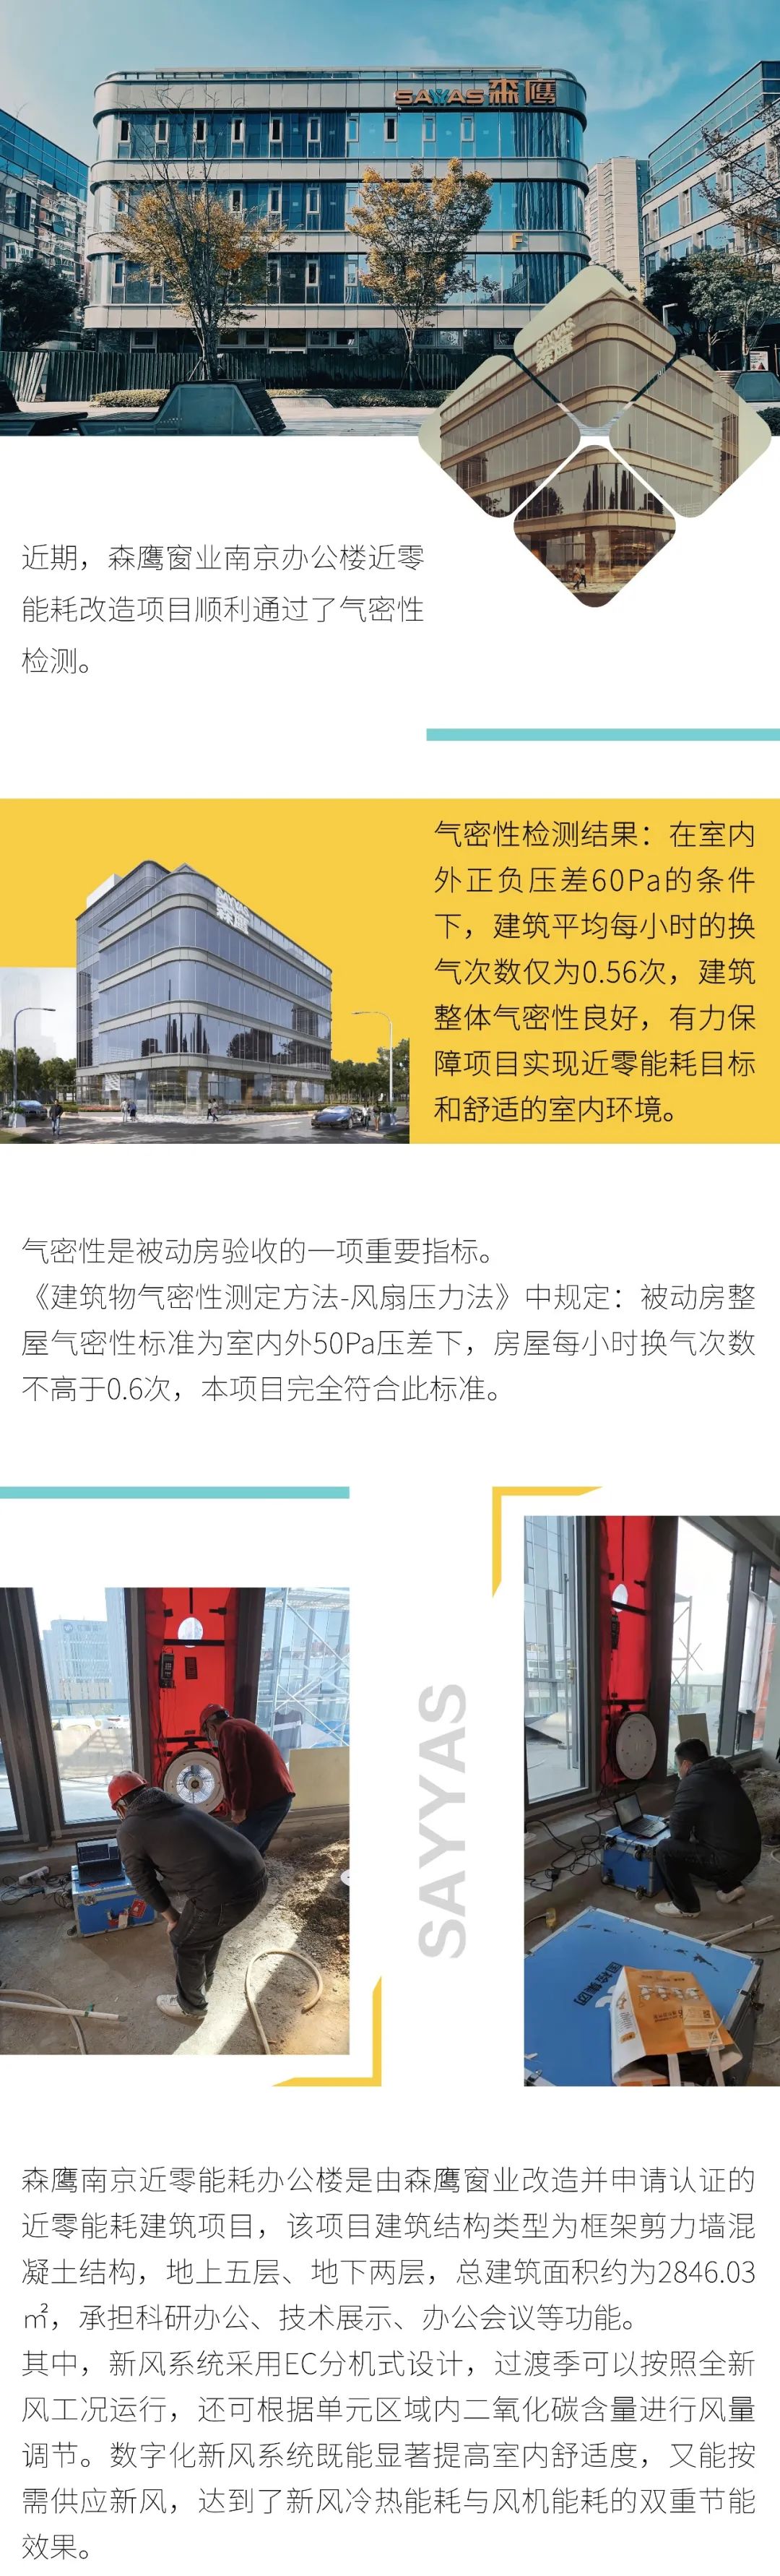 建筑节能丨森鹰南京办公楼近零能耗改造工程通过气密性检测